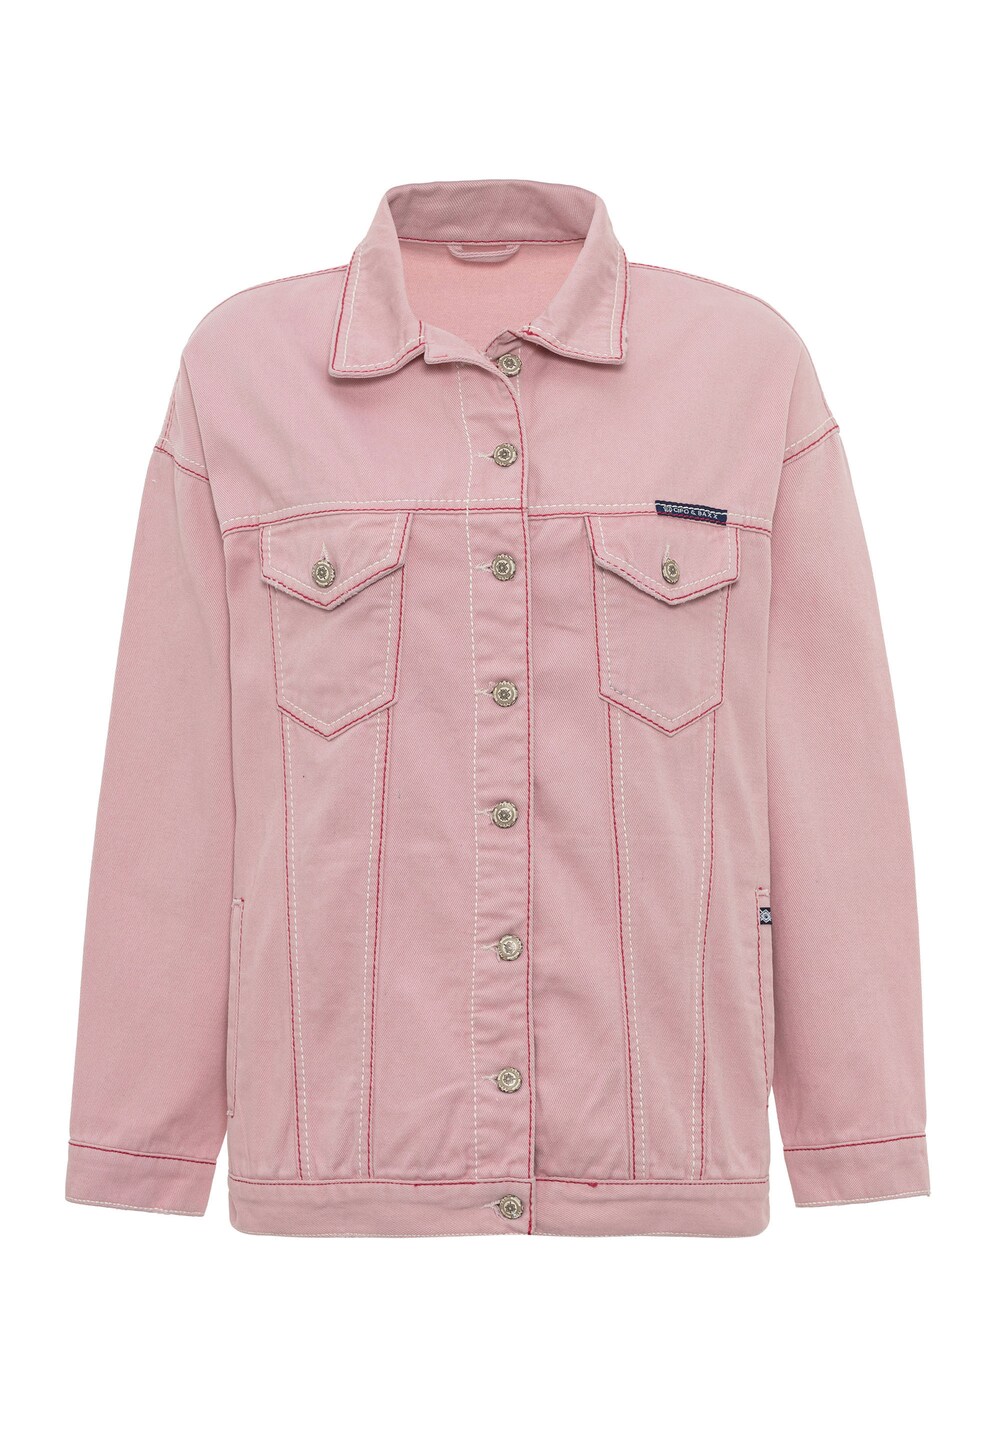 Межсезонная куртка Cipo & Baxx, розовый